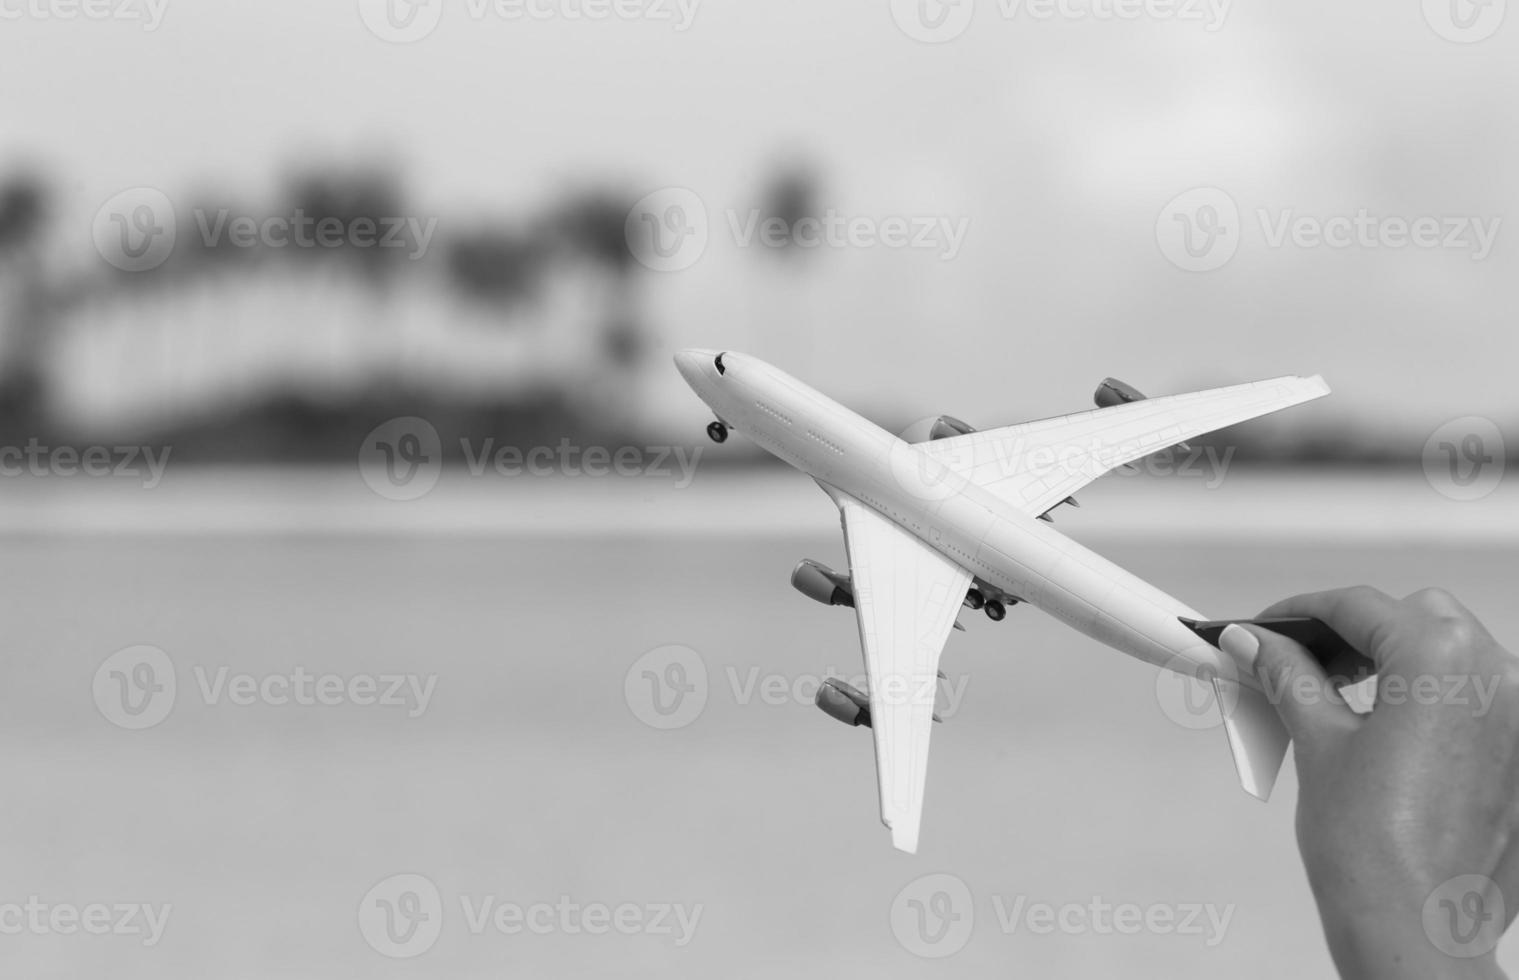 pequeña miniatura blanca de un avión. foto en blanco y negro.